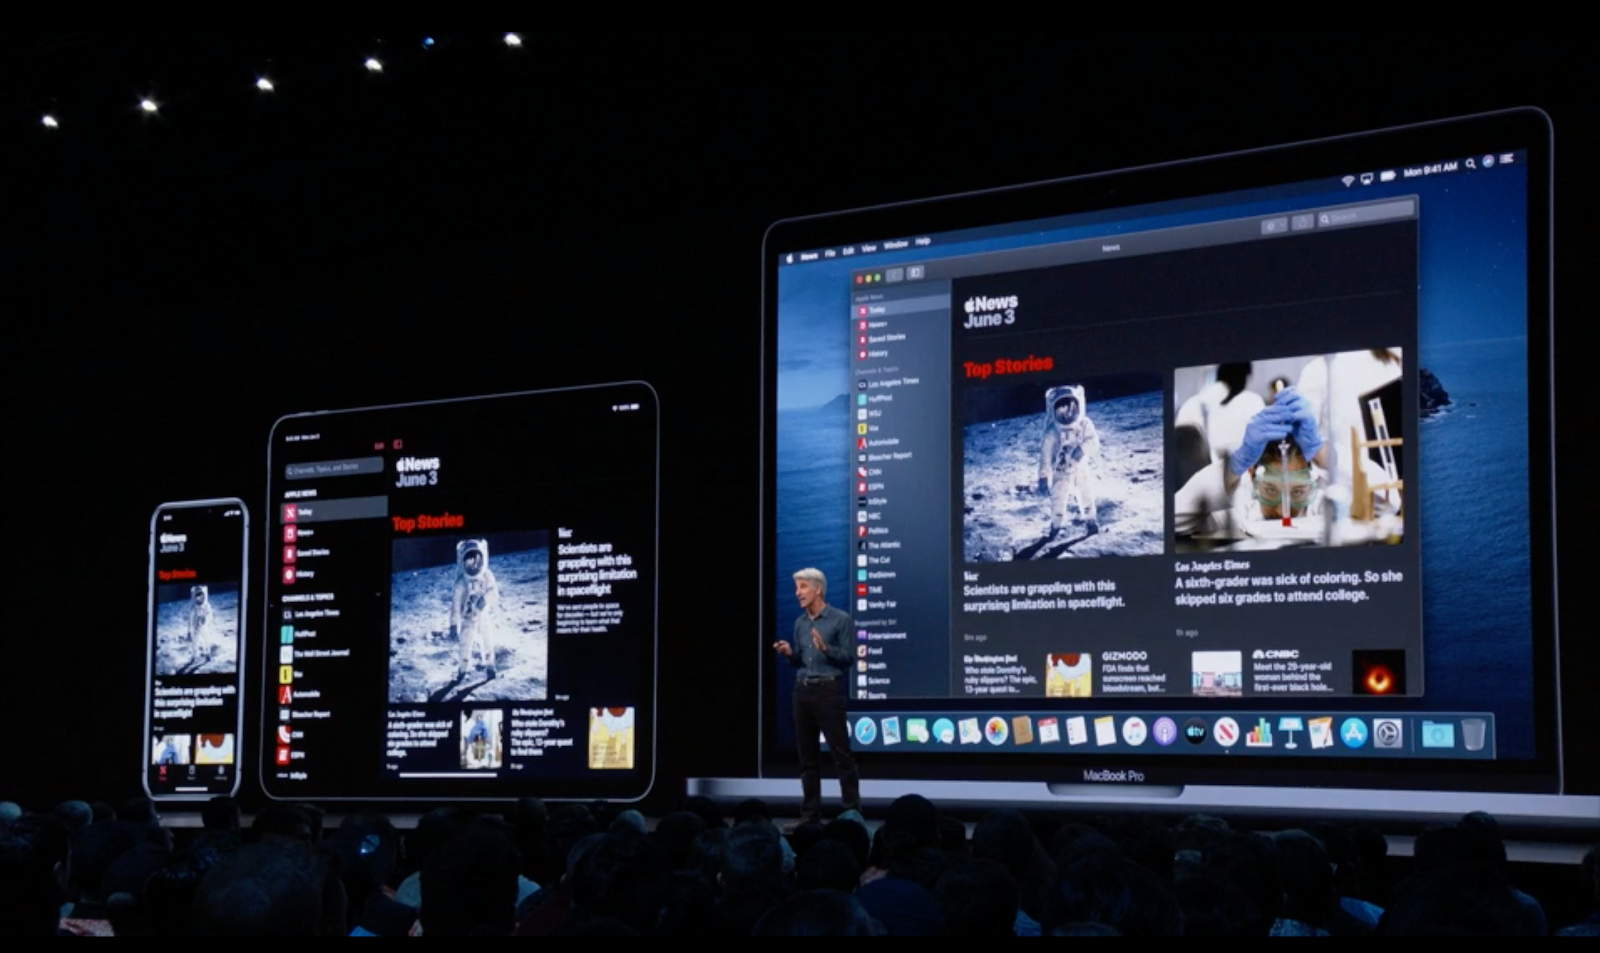 Mac apps instead of iTunes